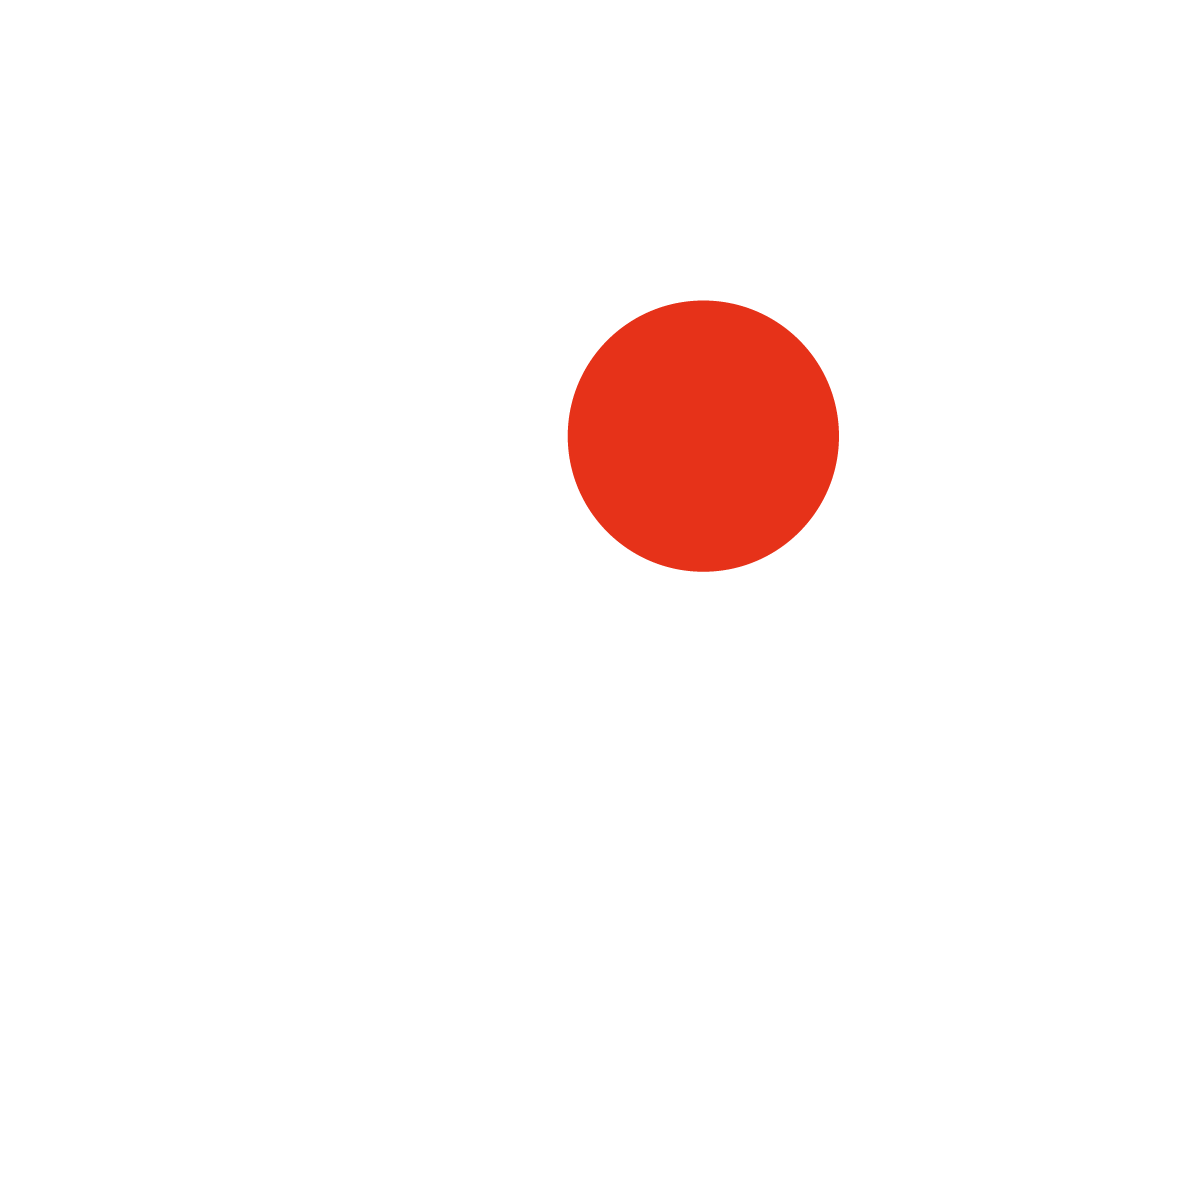 Messe und Congress Centrum Halle Münsterland GmbH